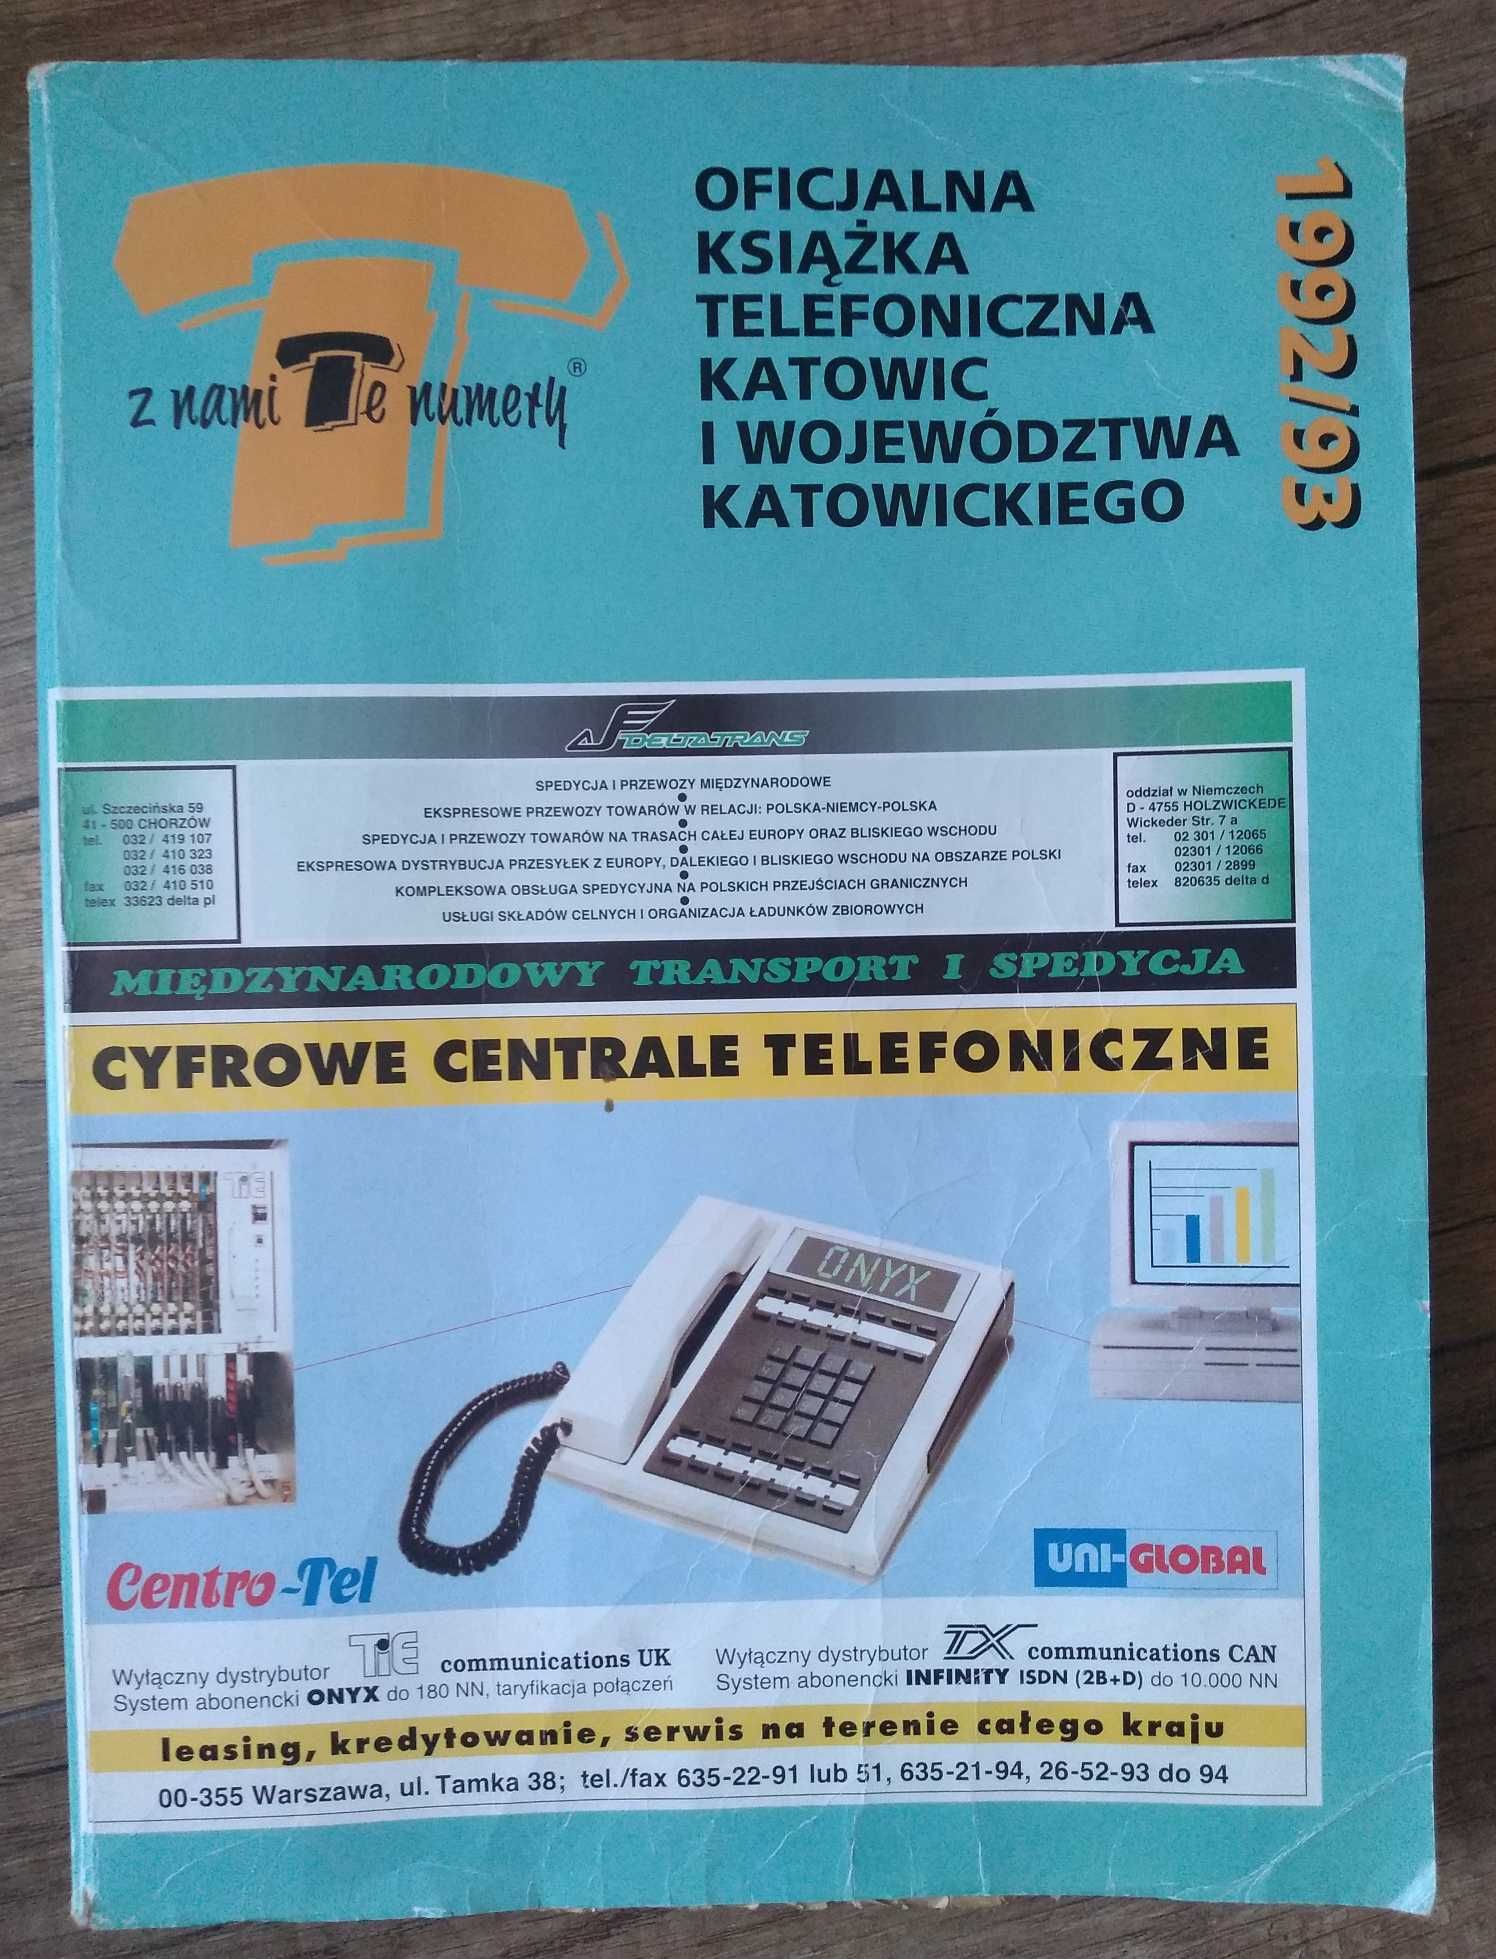 Książka telefoniczna dla Katowic i woj. katowickiego 1992/93